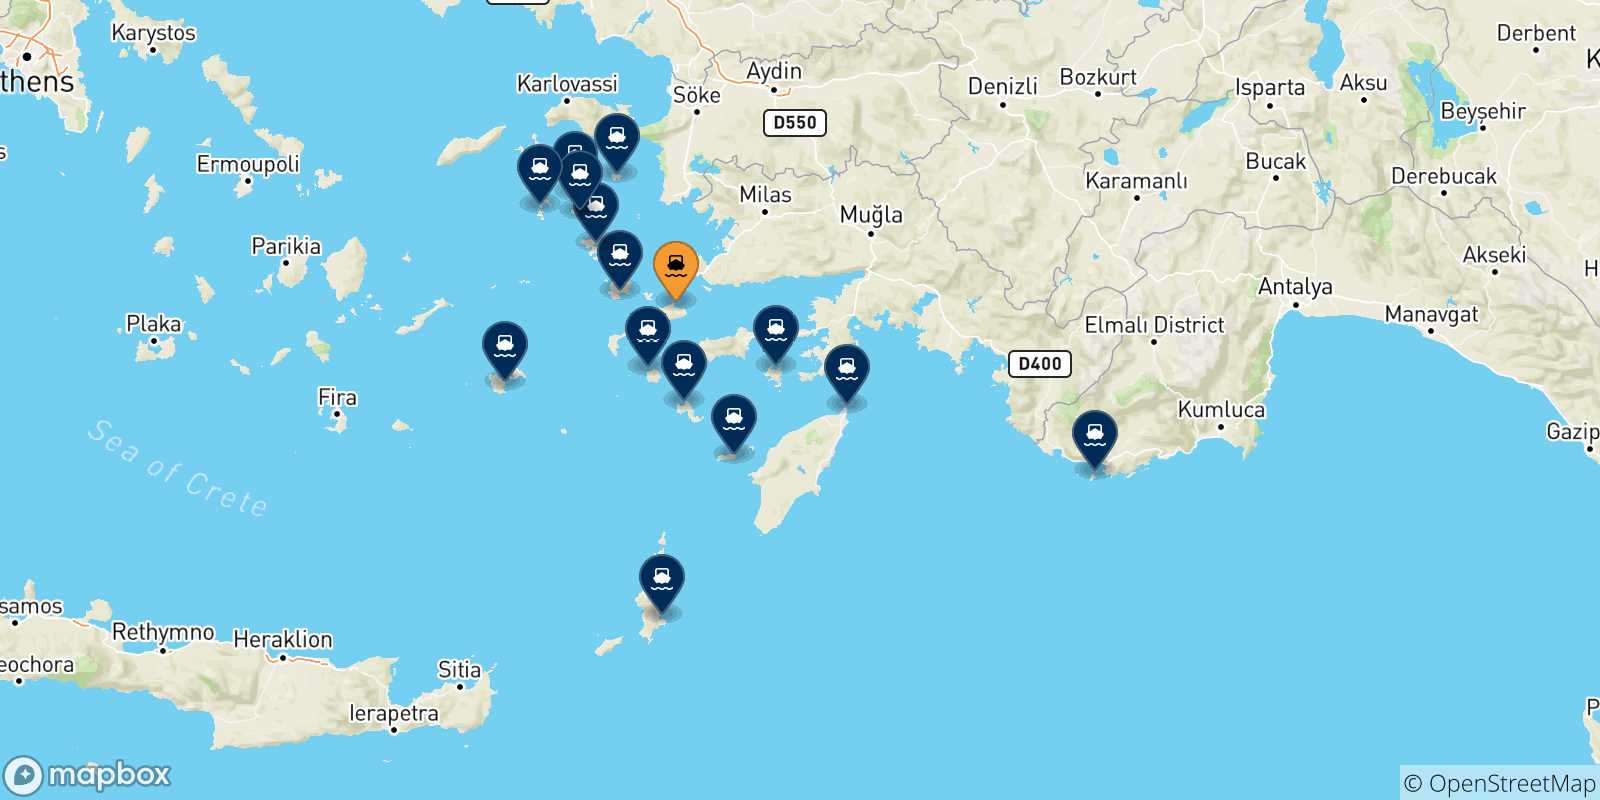 Mappa delle possibili rotte tra Kos e le Isole Dodecaneso